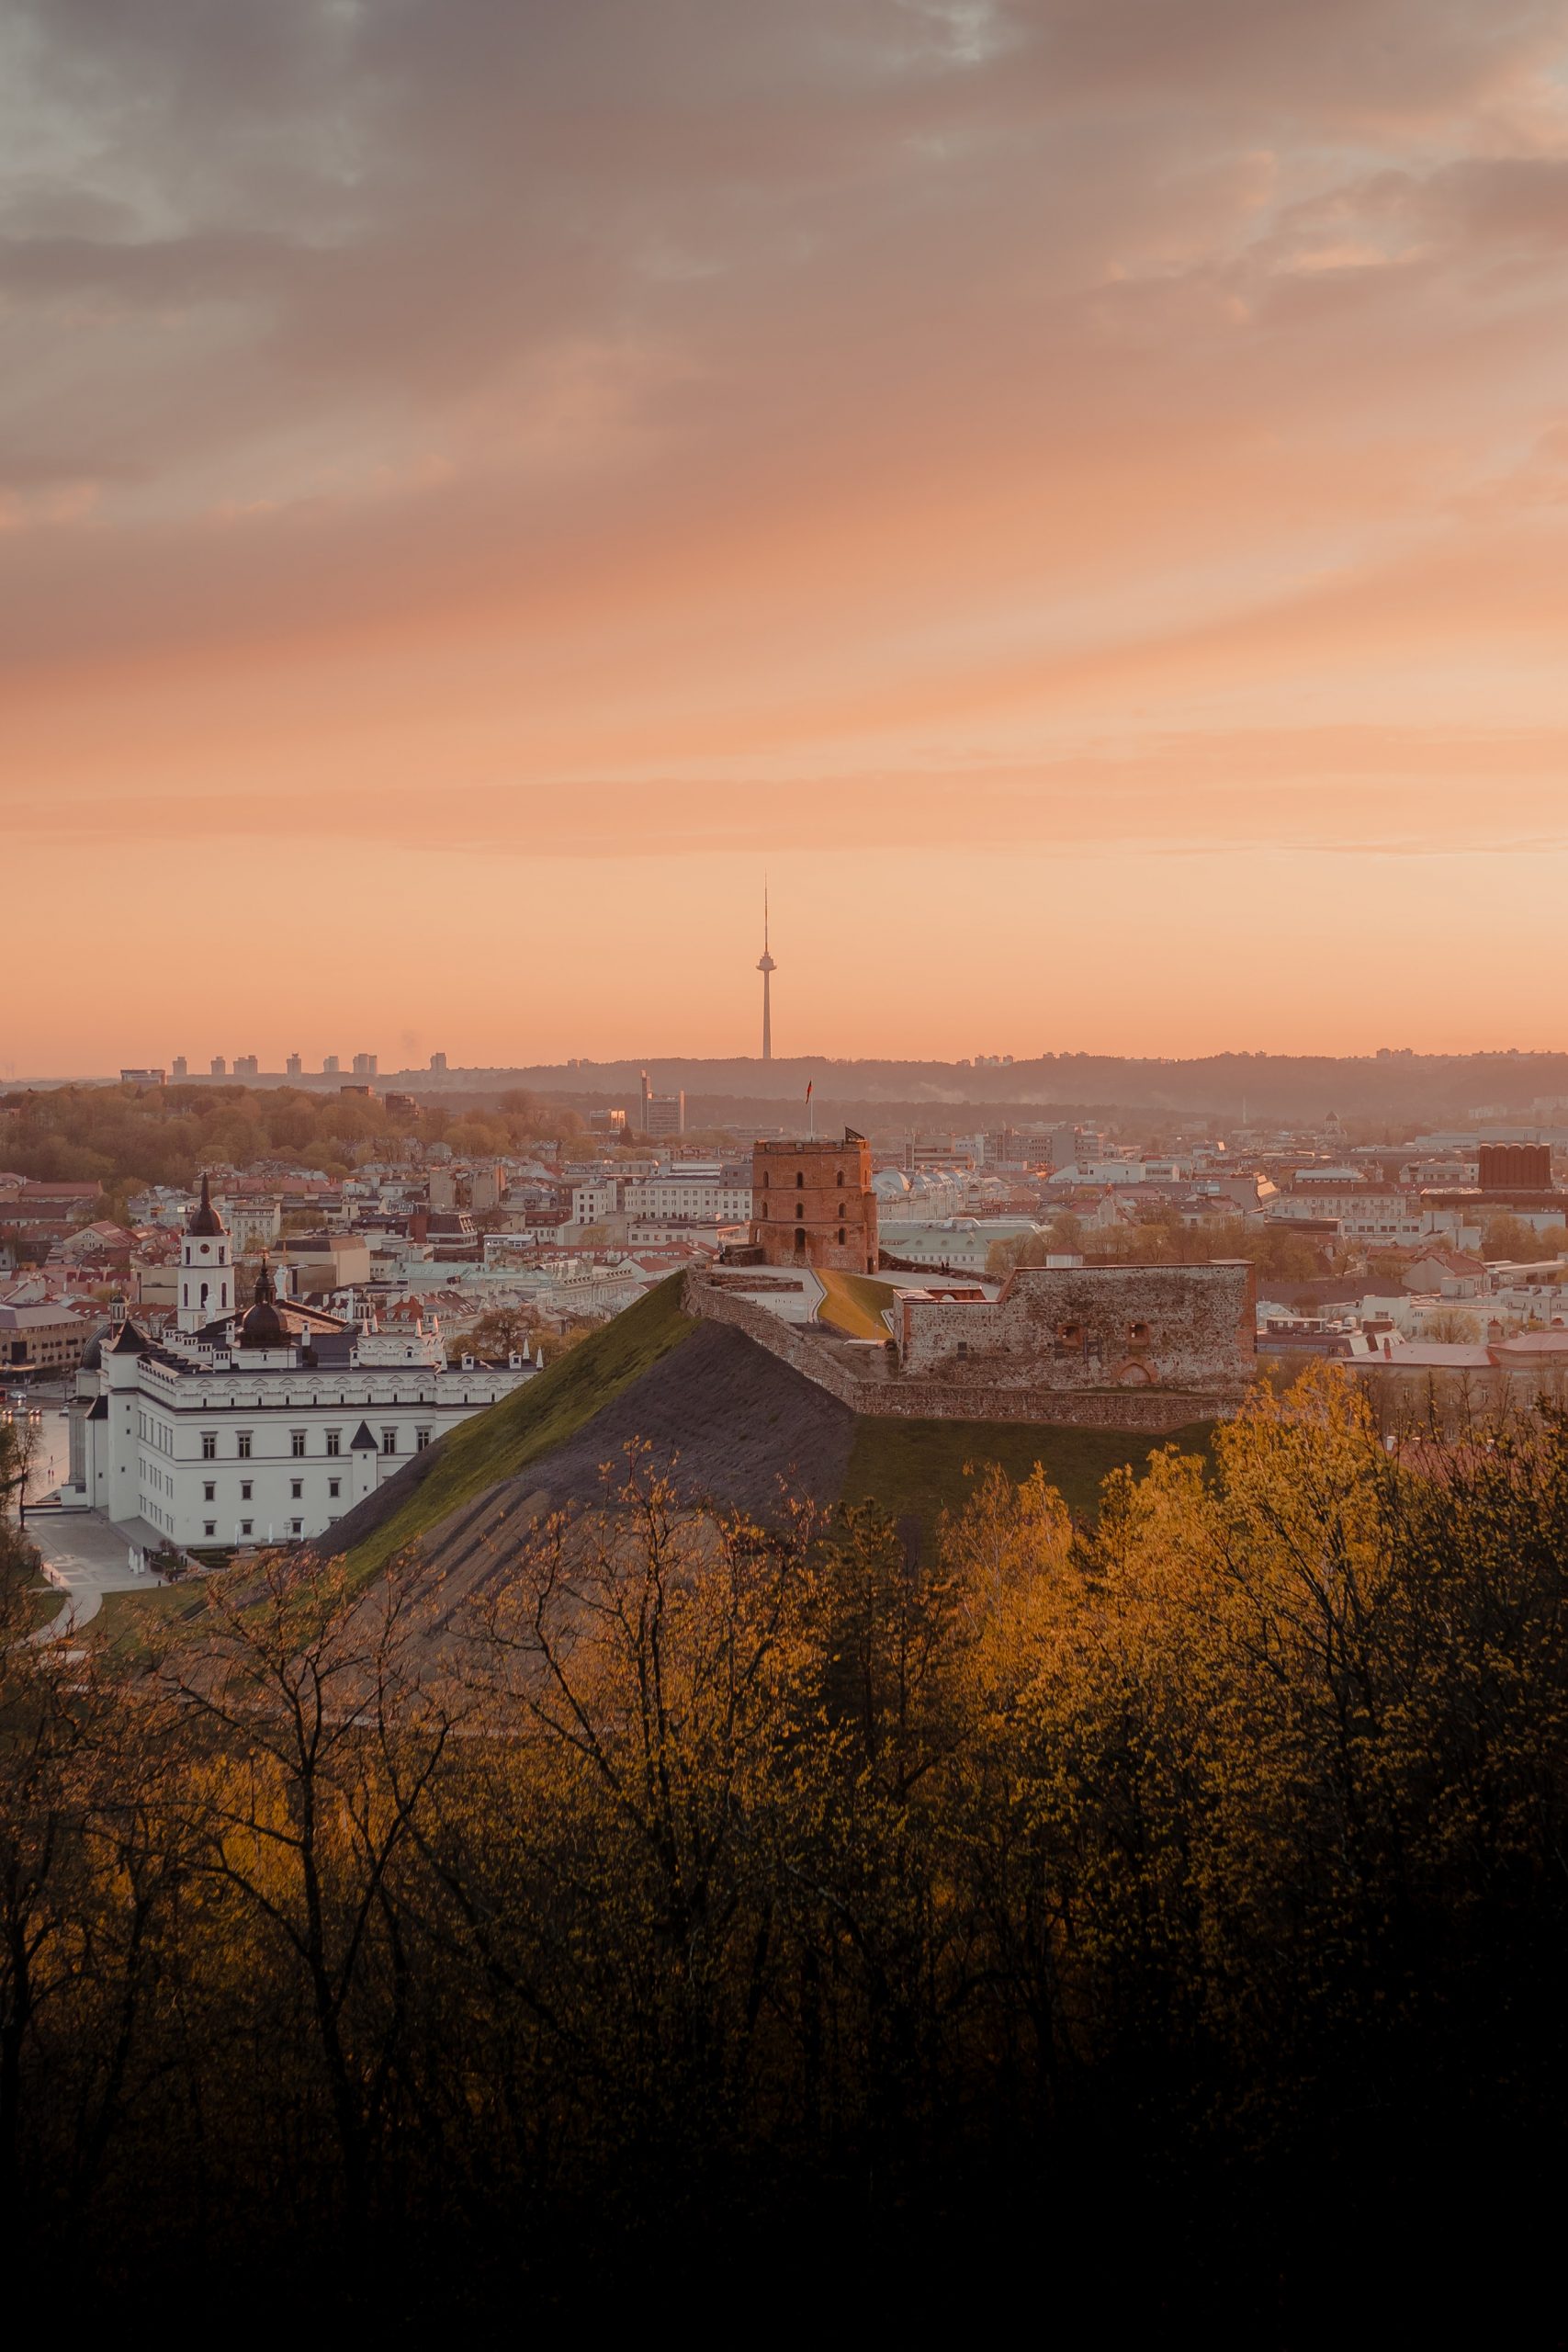 Renginiai Vilniuje: ką galima pamatyti ir kur apsilankyti